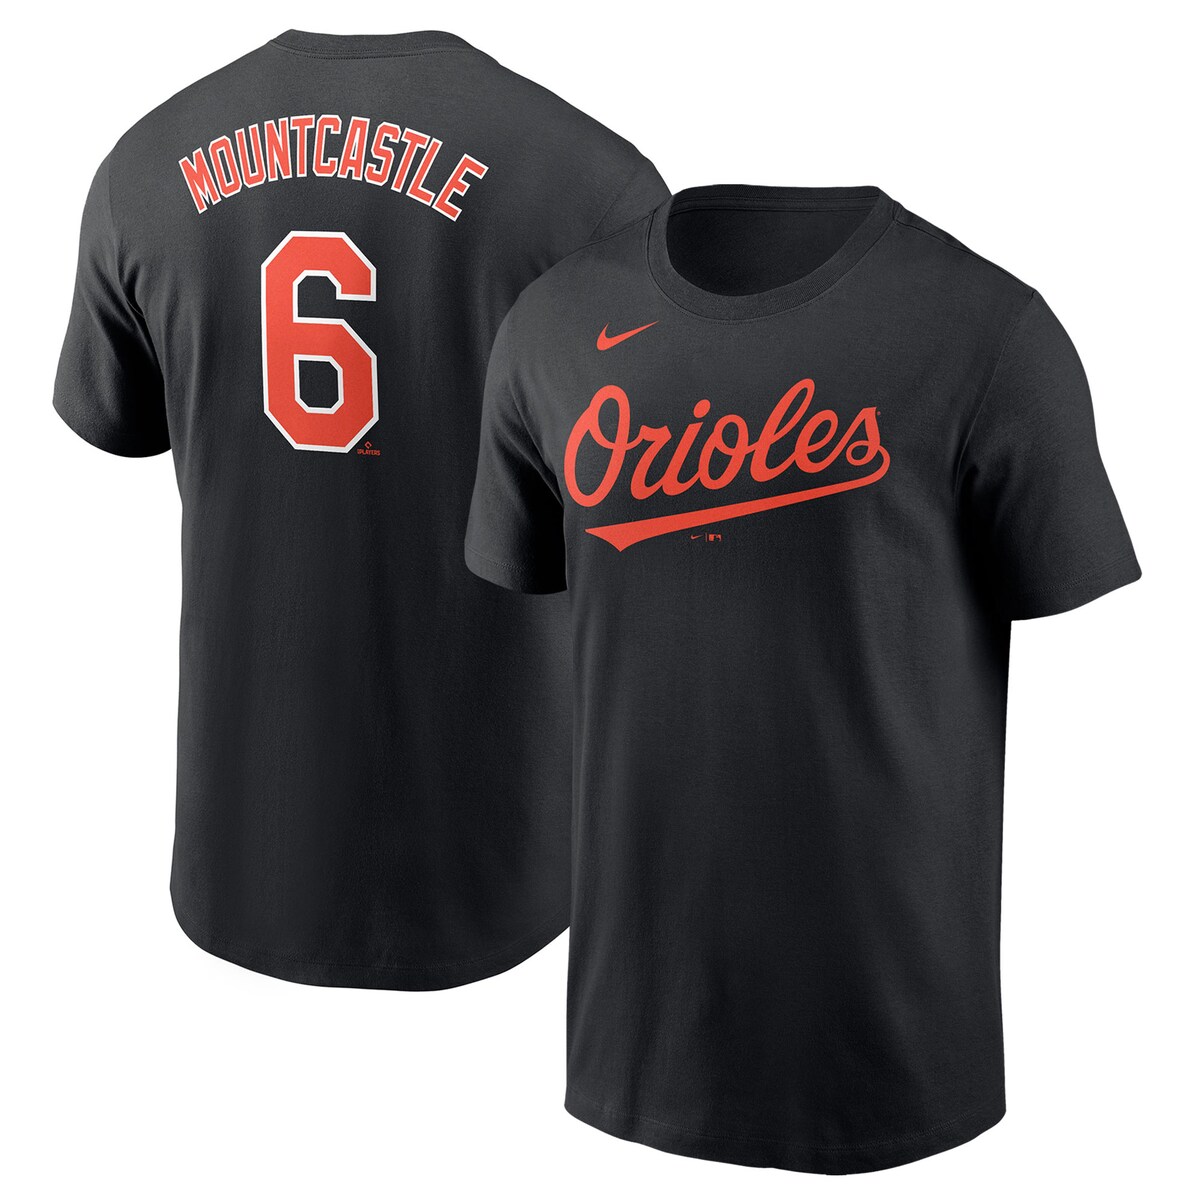 【公式グッズ】MLB オリオールズ ライアン・マウントキャッスル Tシャツ Nike ナイキ メンズ ブラック (Men's Nike Player Name and Number T-Shirt - League Request)